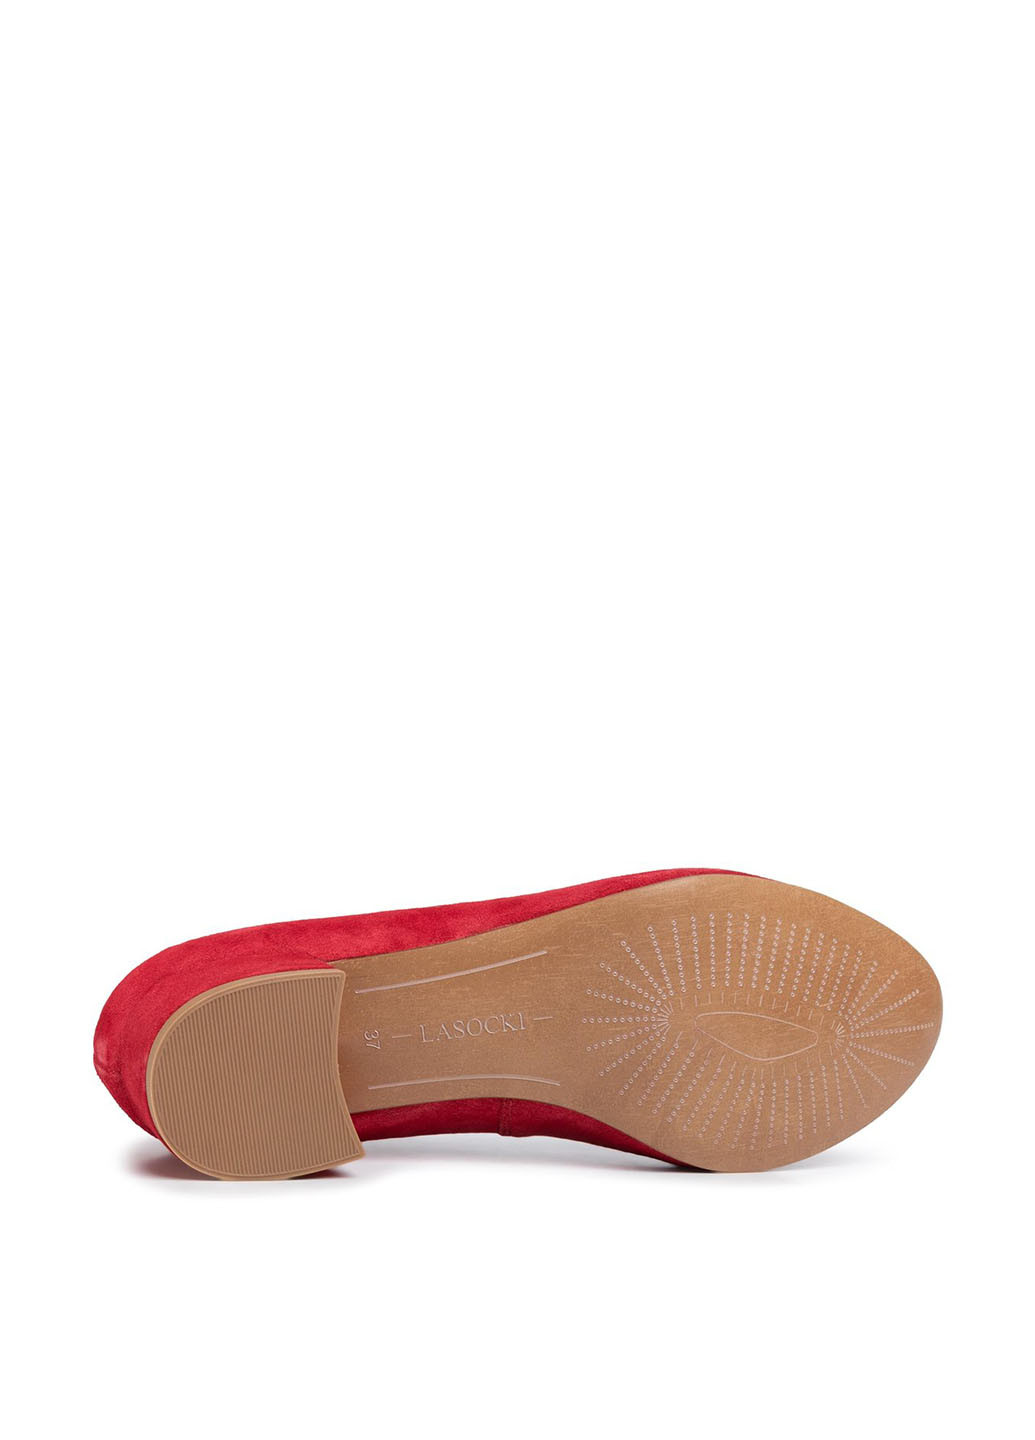 Напівчеревики Lasocki 3064-05 туфлі-човники однотонні червоні кежуали